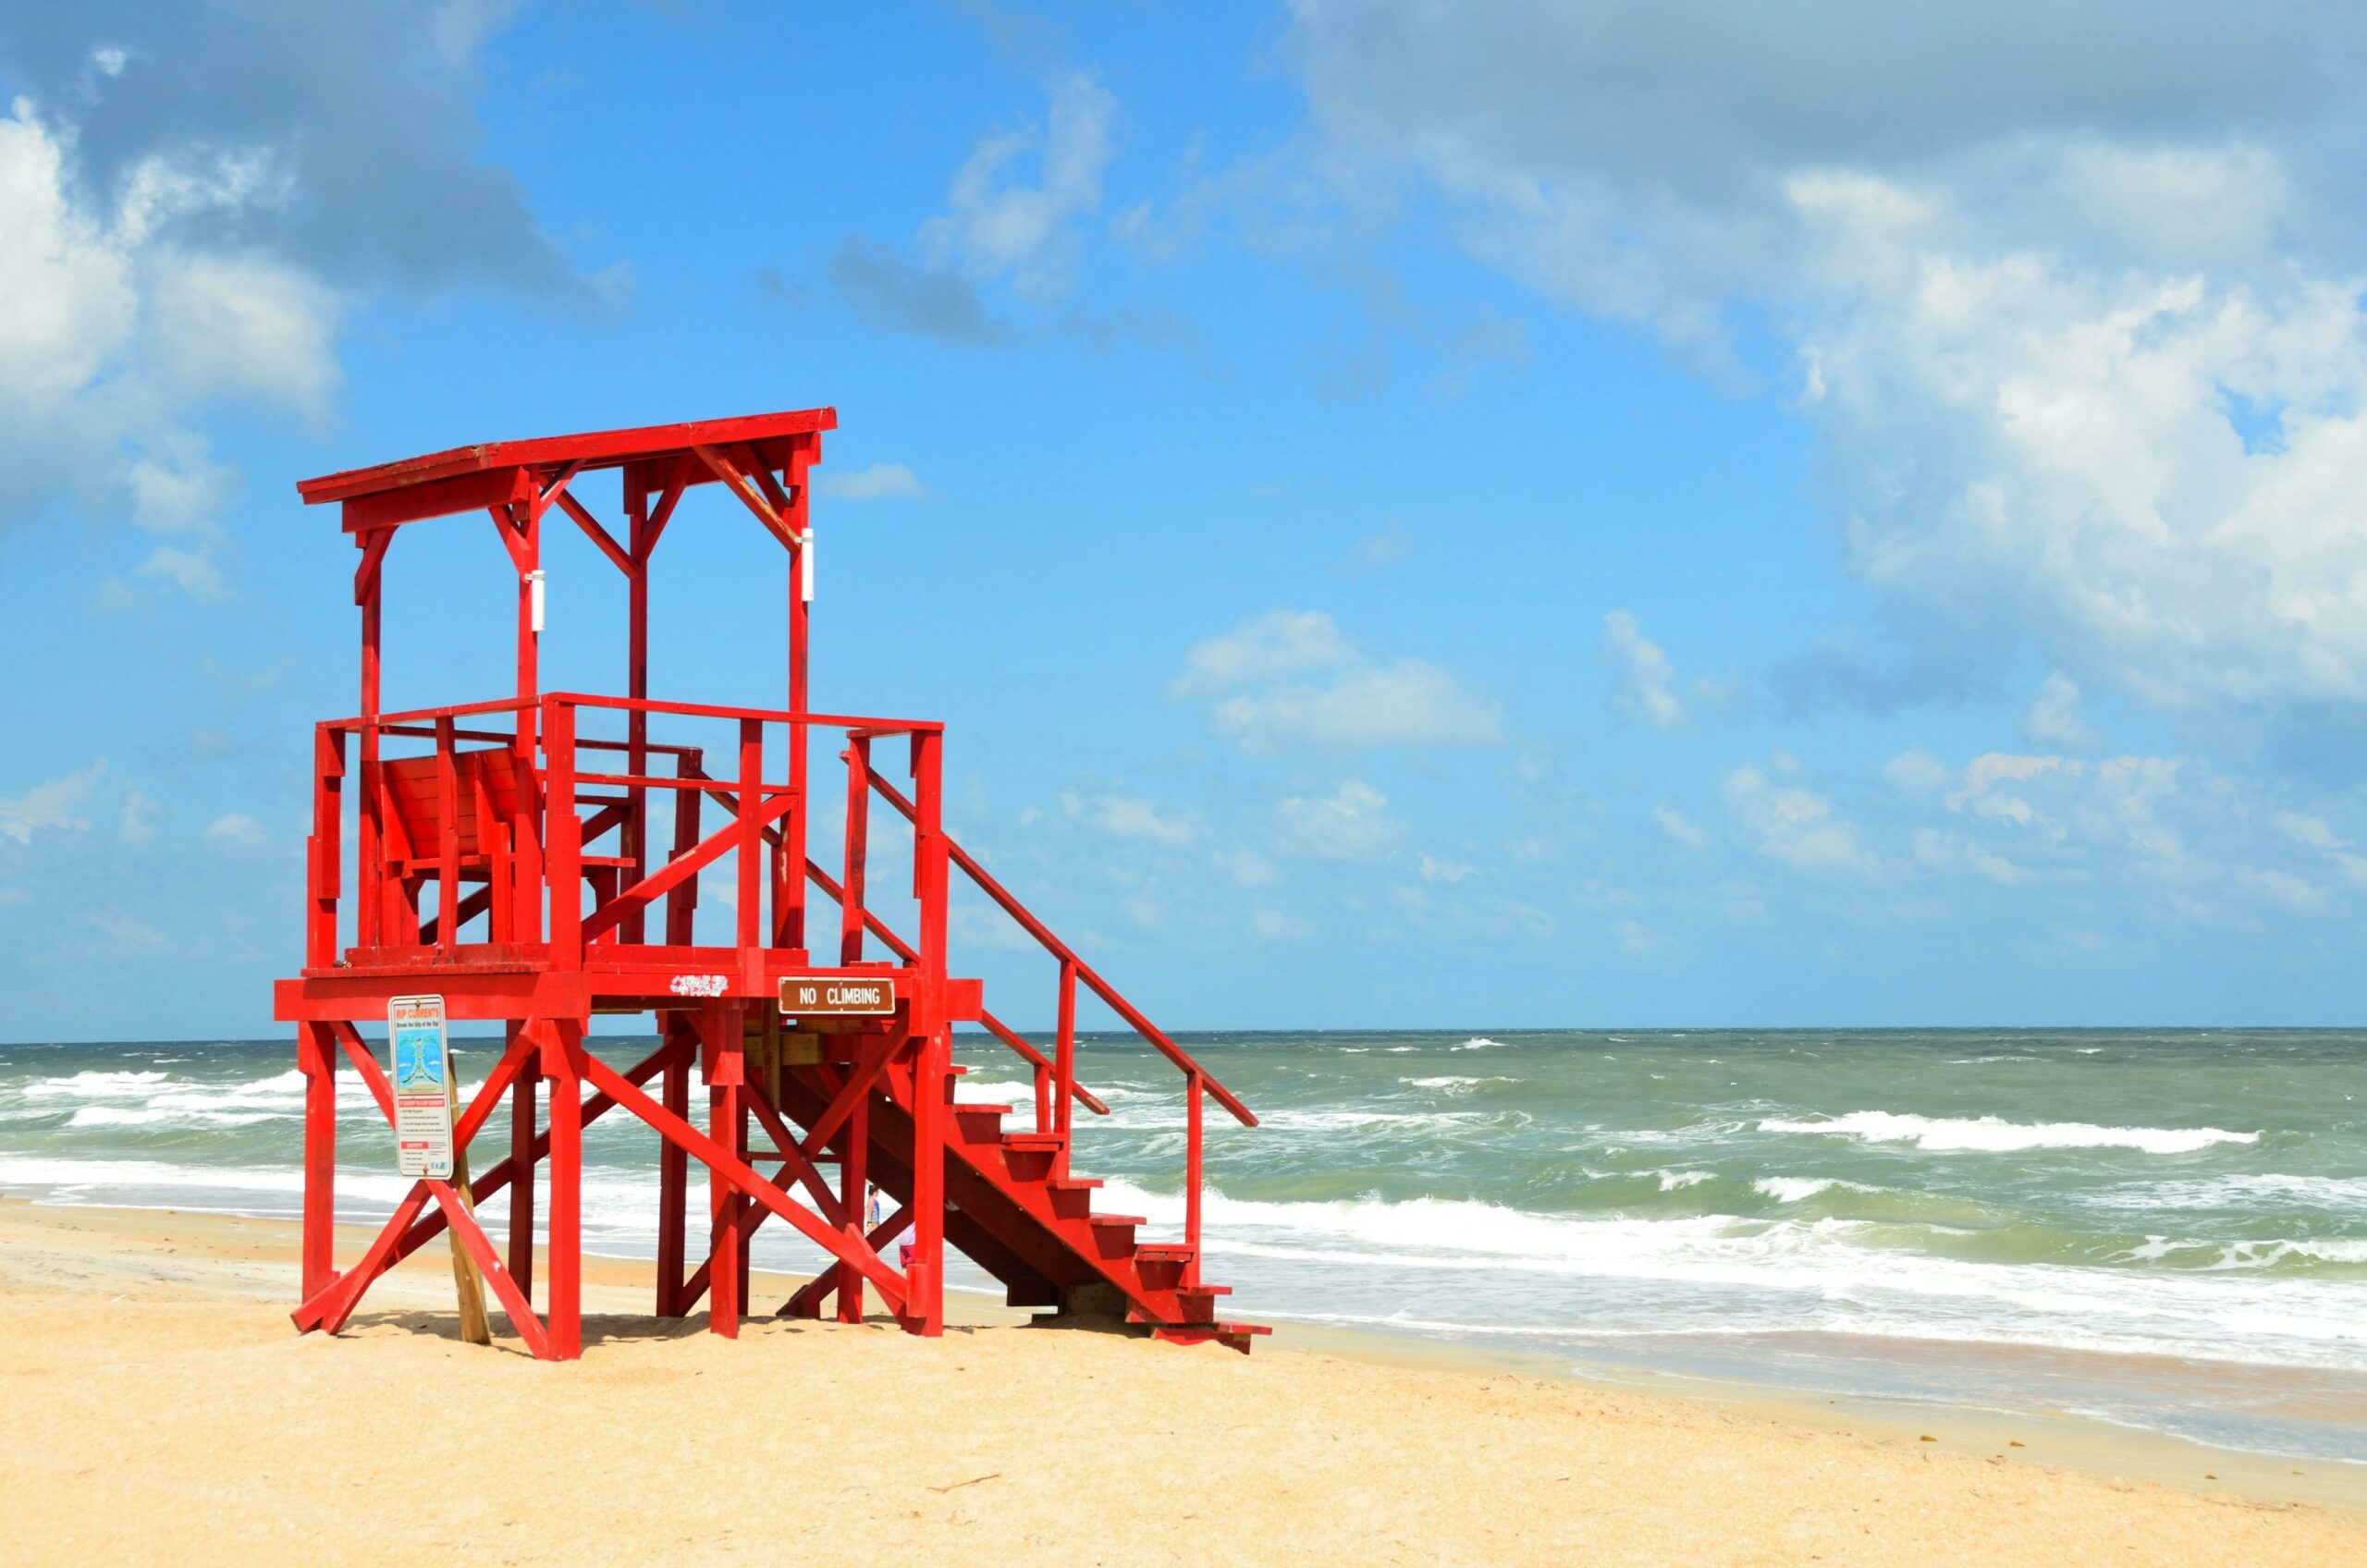 Un poste de surveillance de plage rouge vif sur le sable, avec l'océan et un ciel partiellement nuageux en arrière-plan.